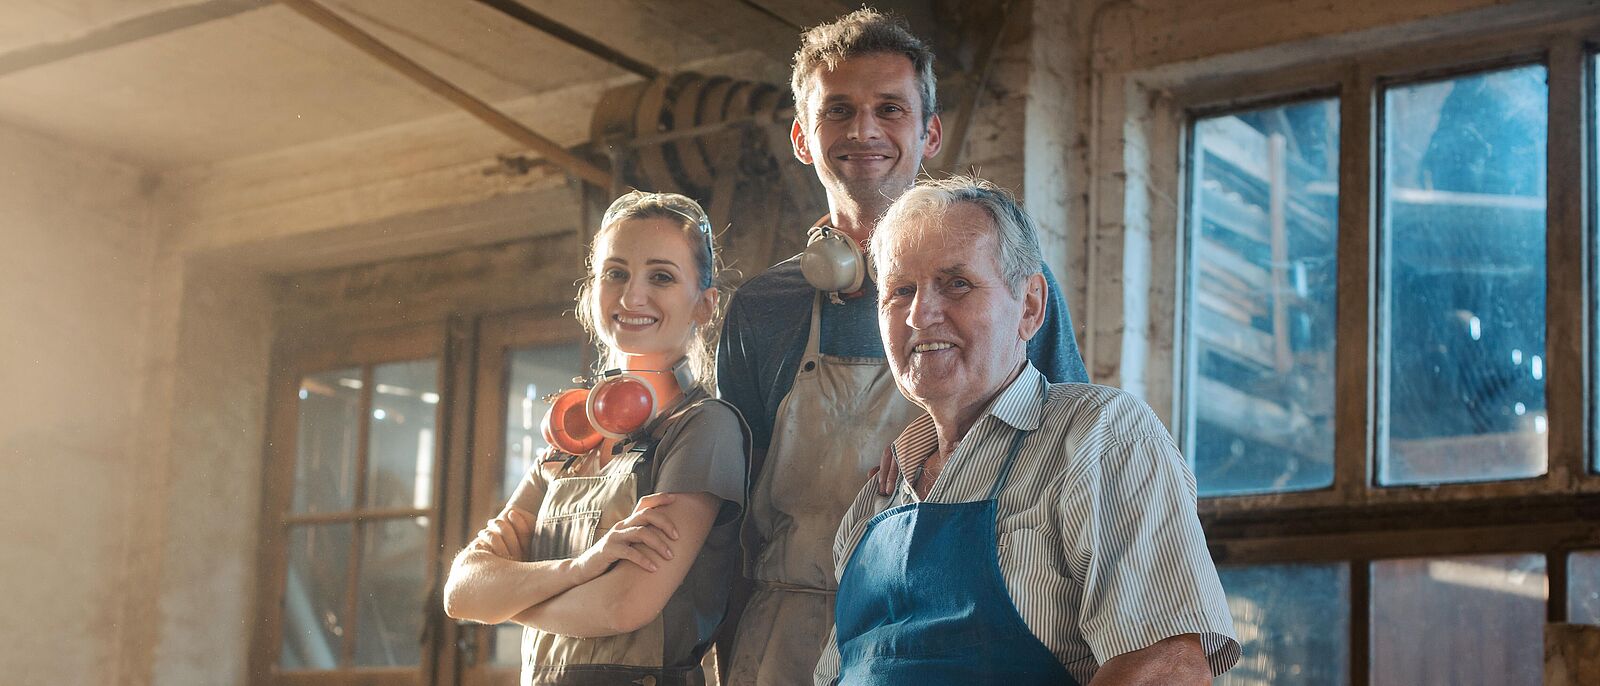 3 Menschen, einer sitzend über 3 Generationen (älter, mittleren Altes und im Jugendalter) stehen in einer Werkstatt mit Fenster im Hintergrund.